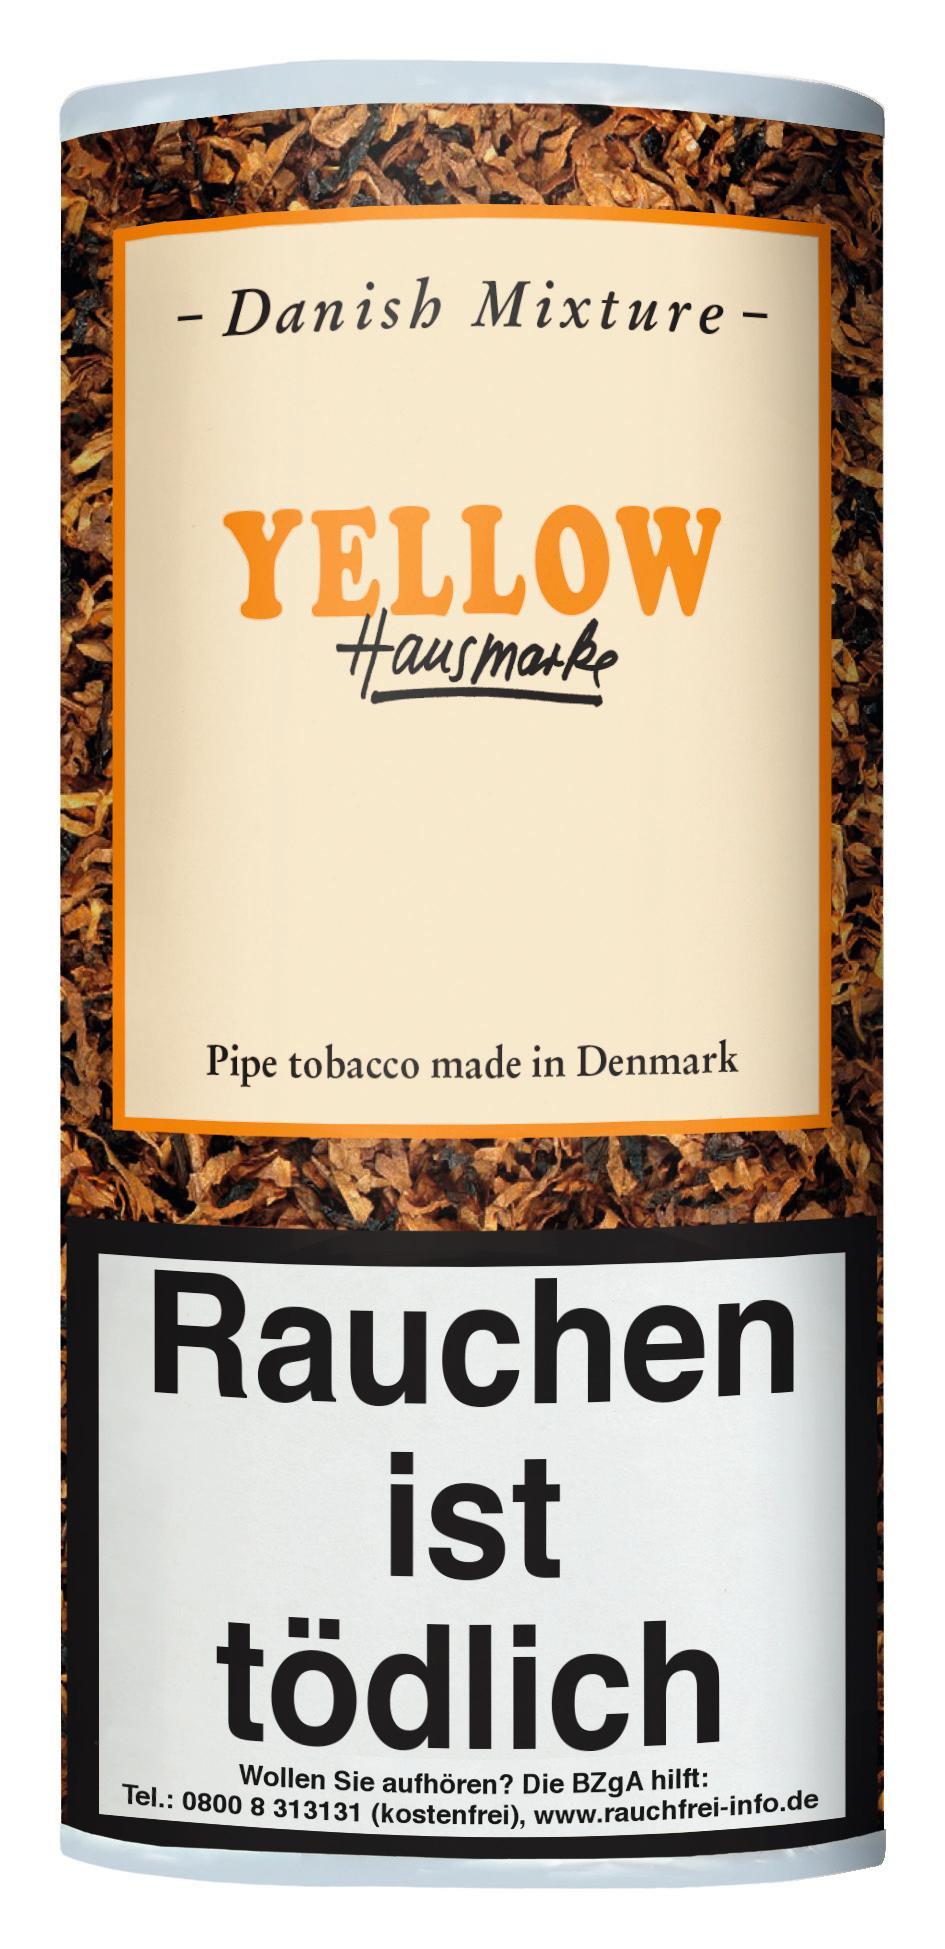 Danish Mixture Yellow Pfeifentabak 1 x 50g Krüll